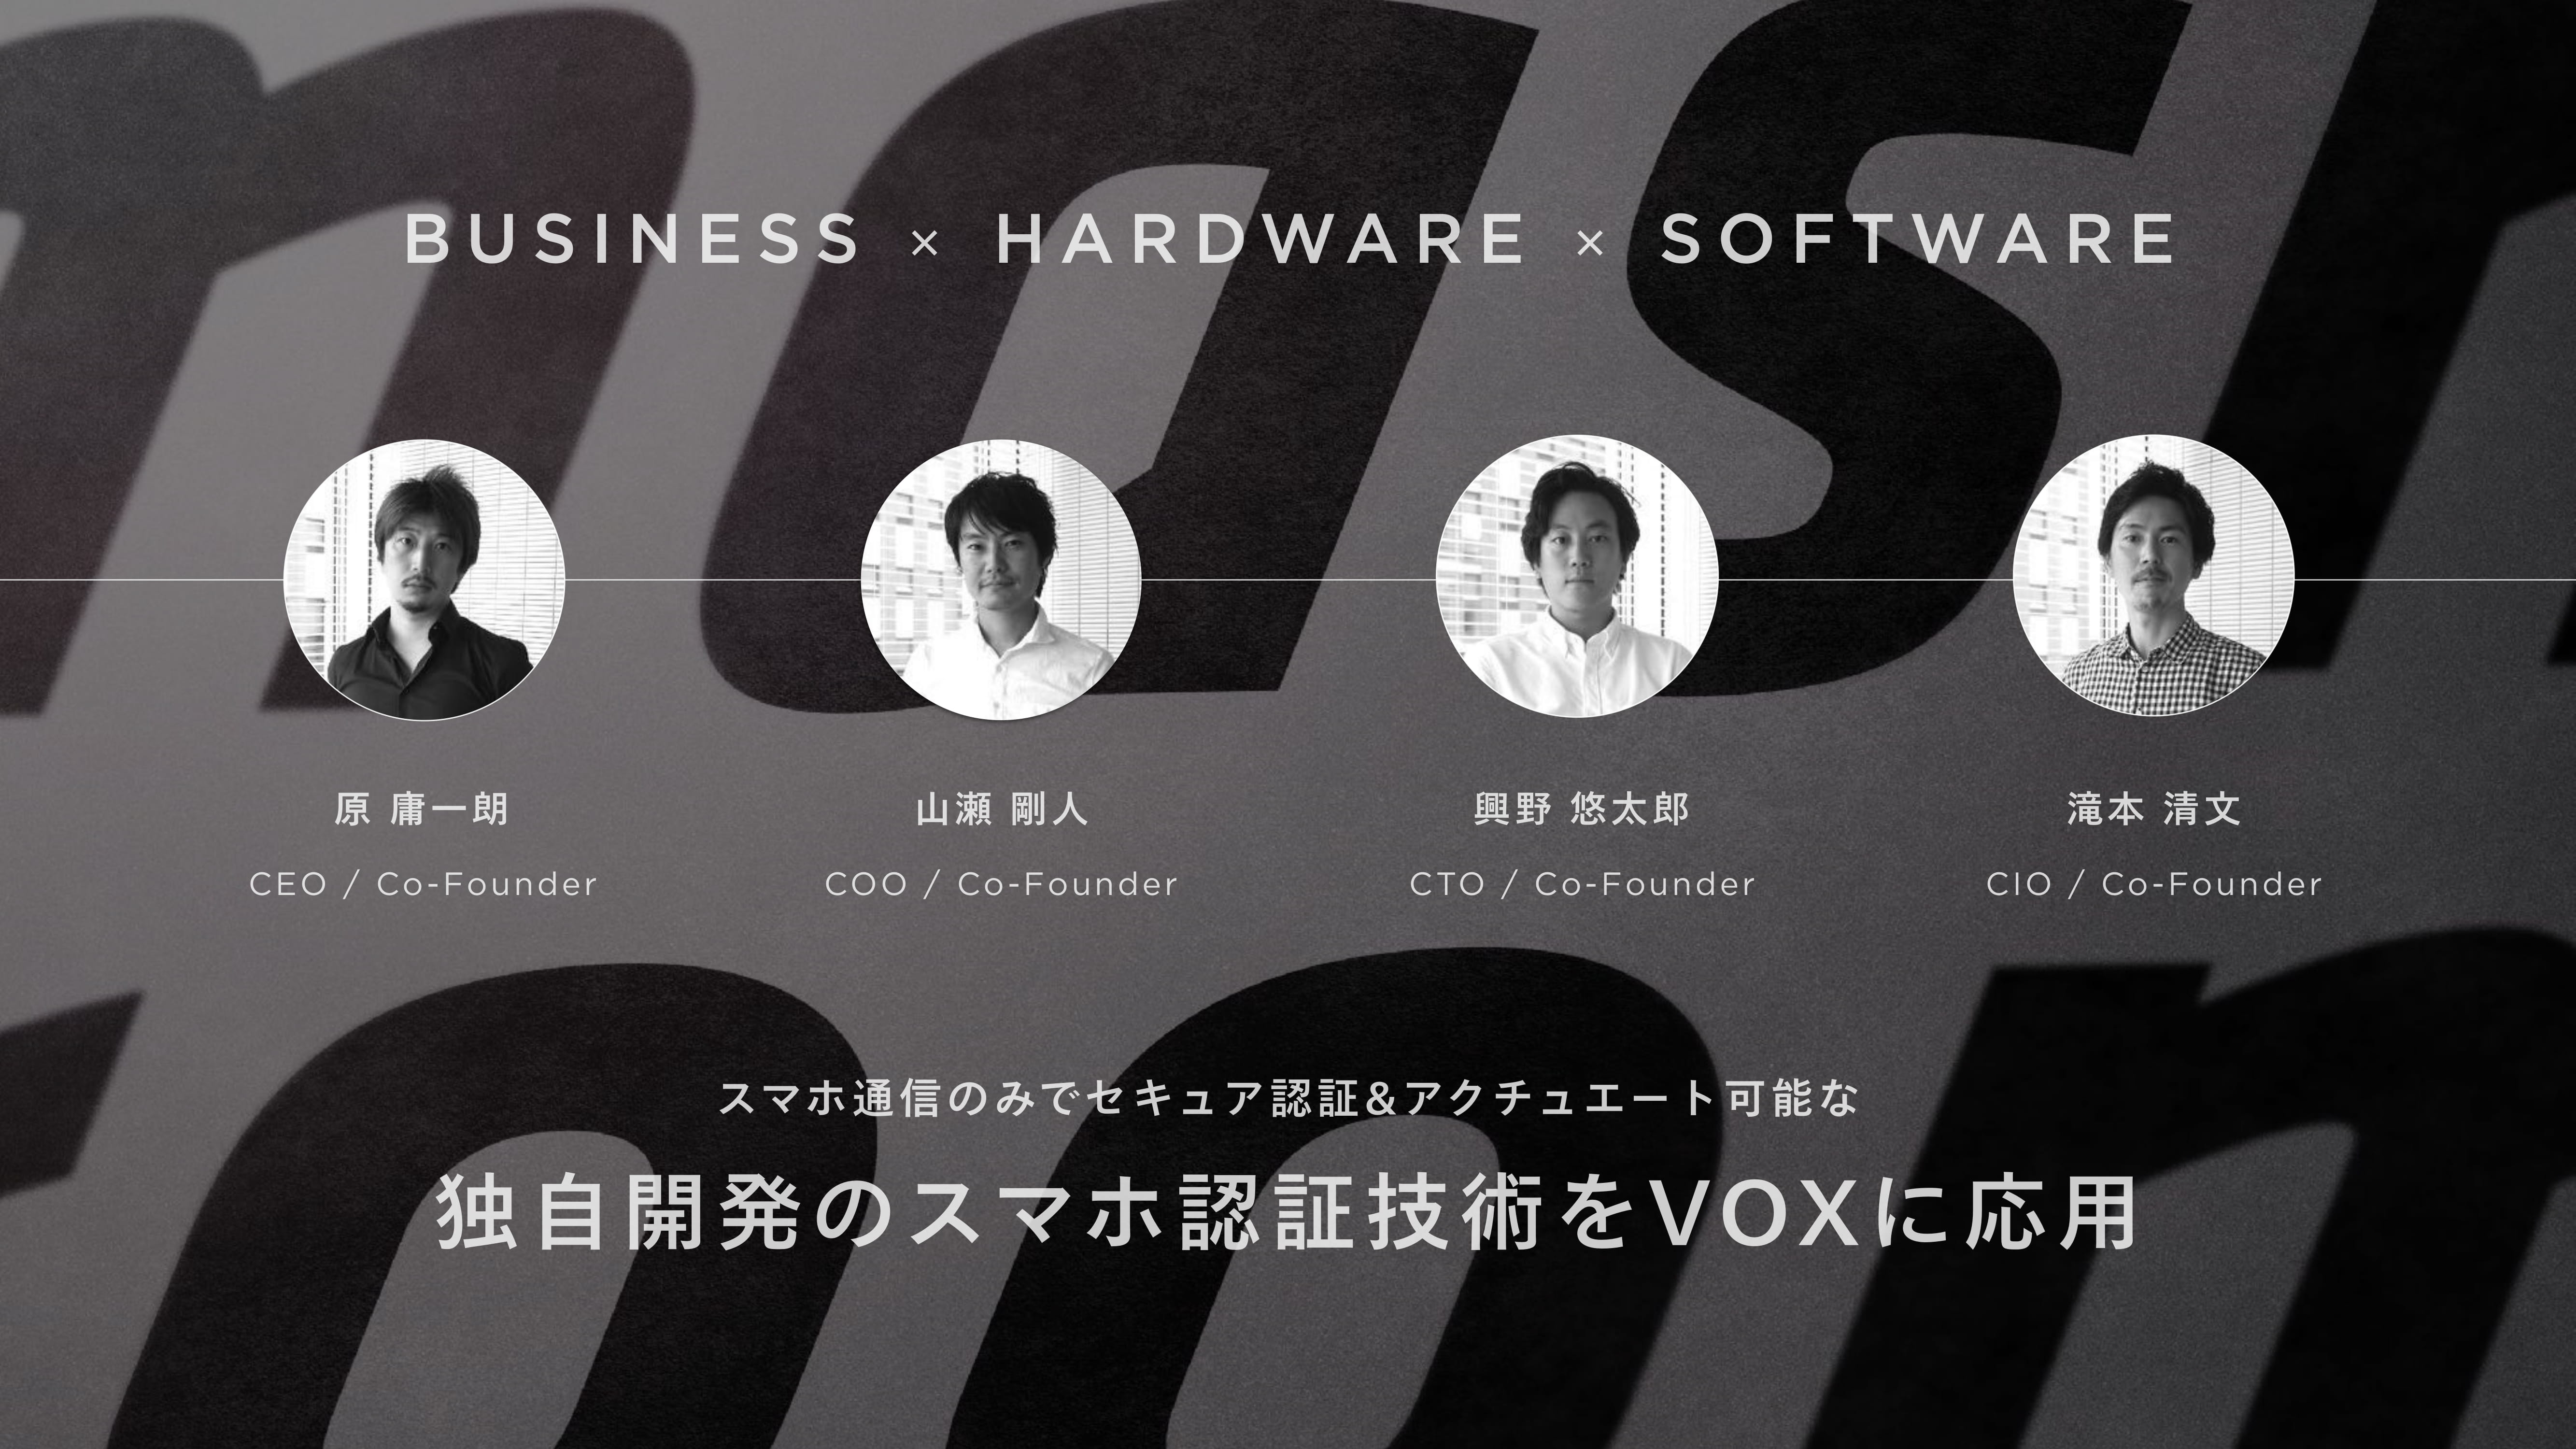 マッシュルームのスマホ制御型宅配ボックス Vox は 日常における安全 スムーズな相互流通を実現する Icc Kyoto 18 文字起こし版 Icc Industry Co Creation